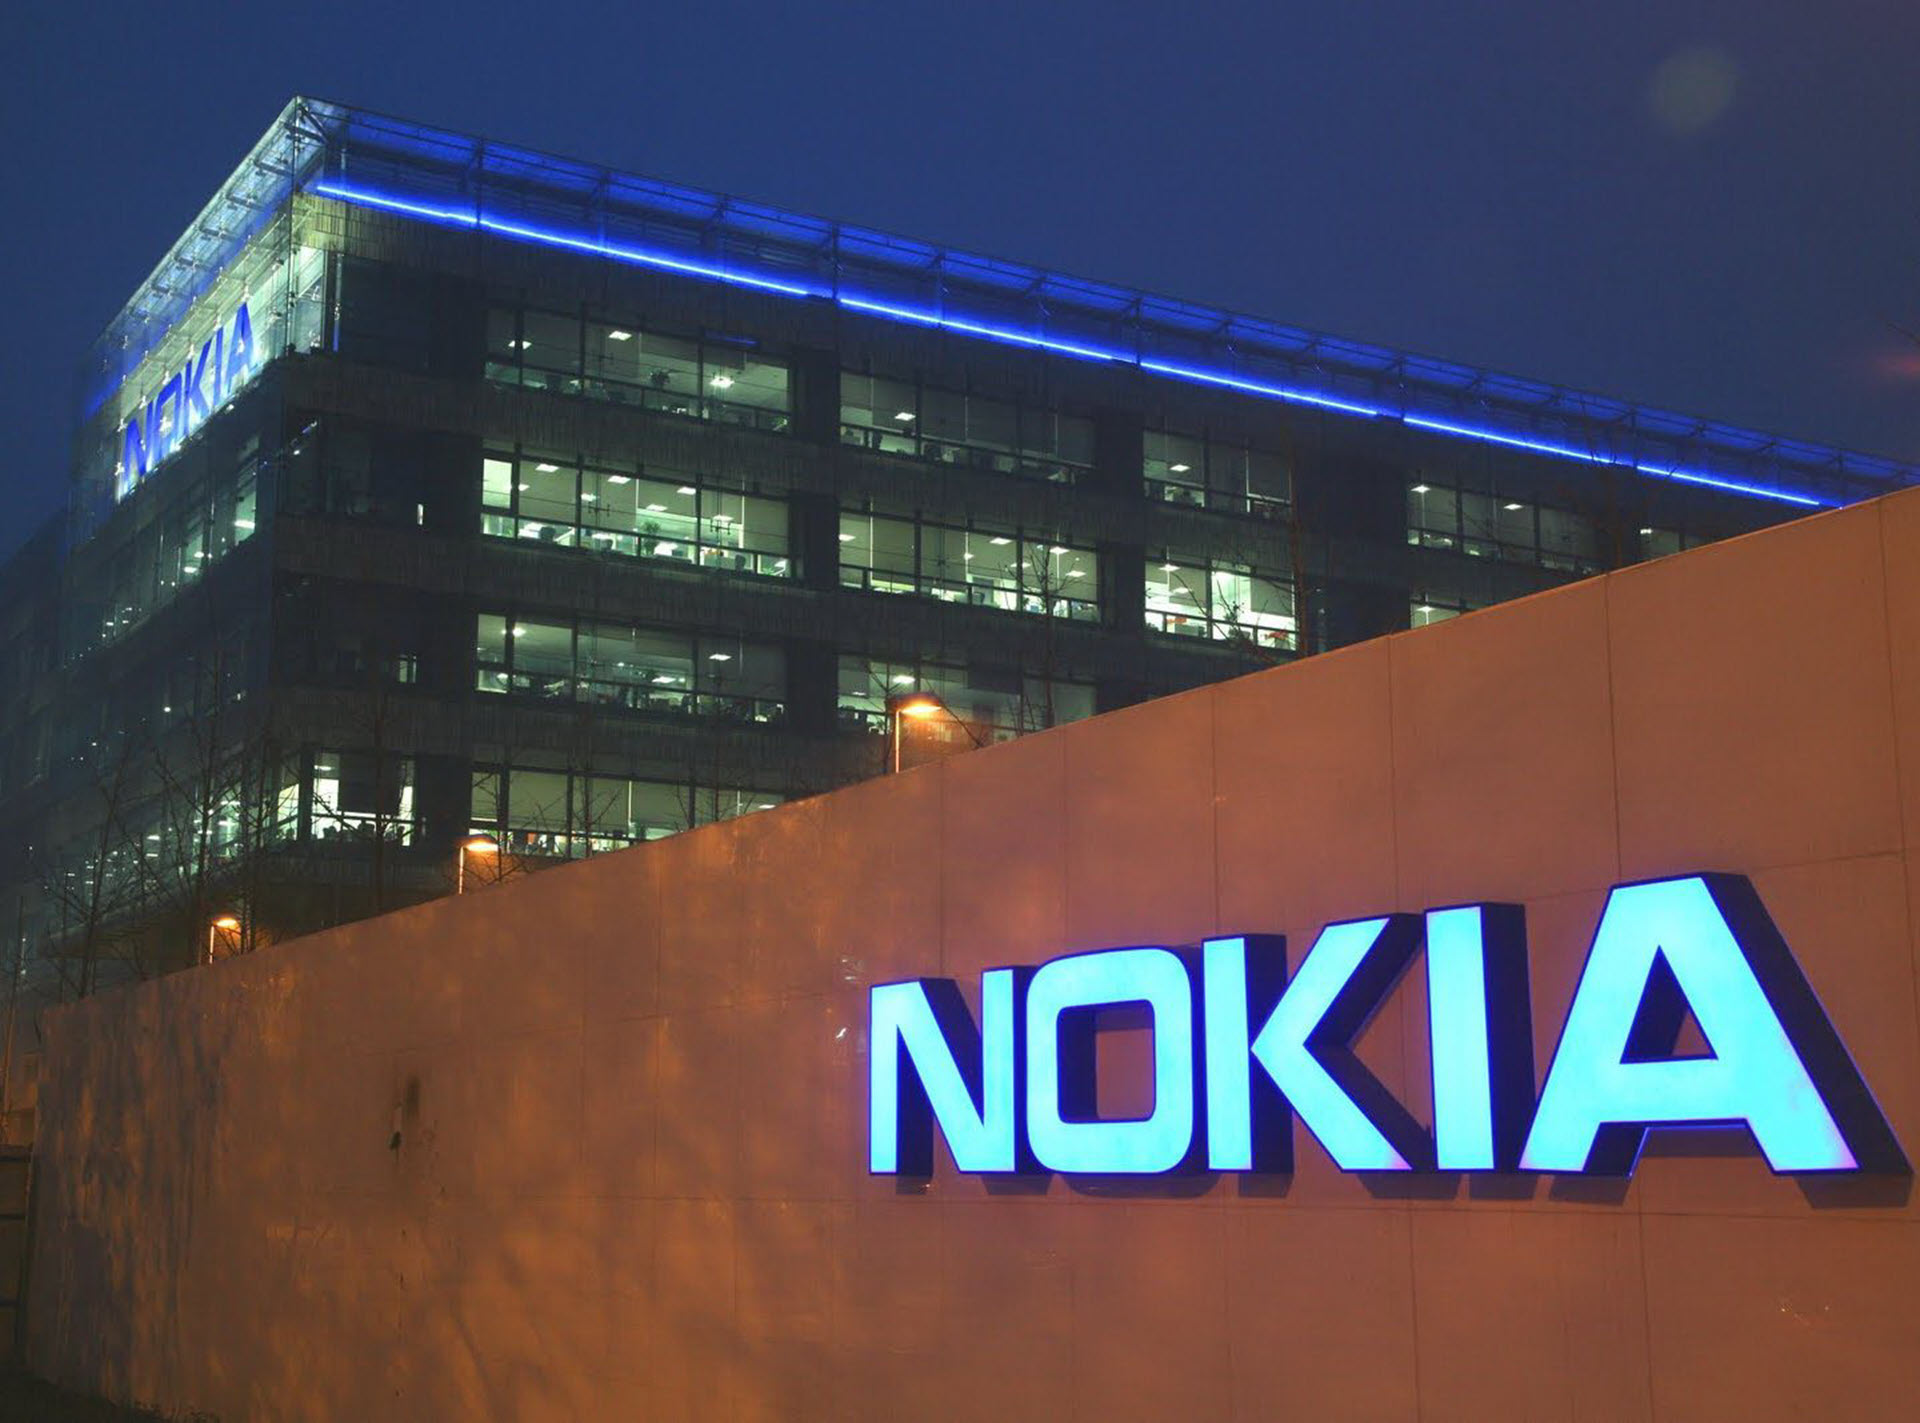 Η Nokia ανακοινώνει σχέδια για την περικοπή 14.000 θέσεων εργασίας (για αρχή) εν μέσω των προκλήσεων της αγοράς